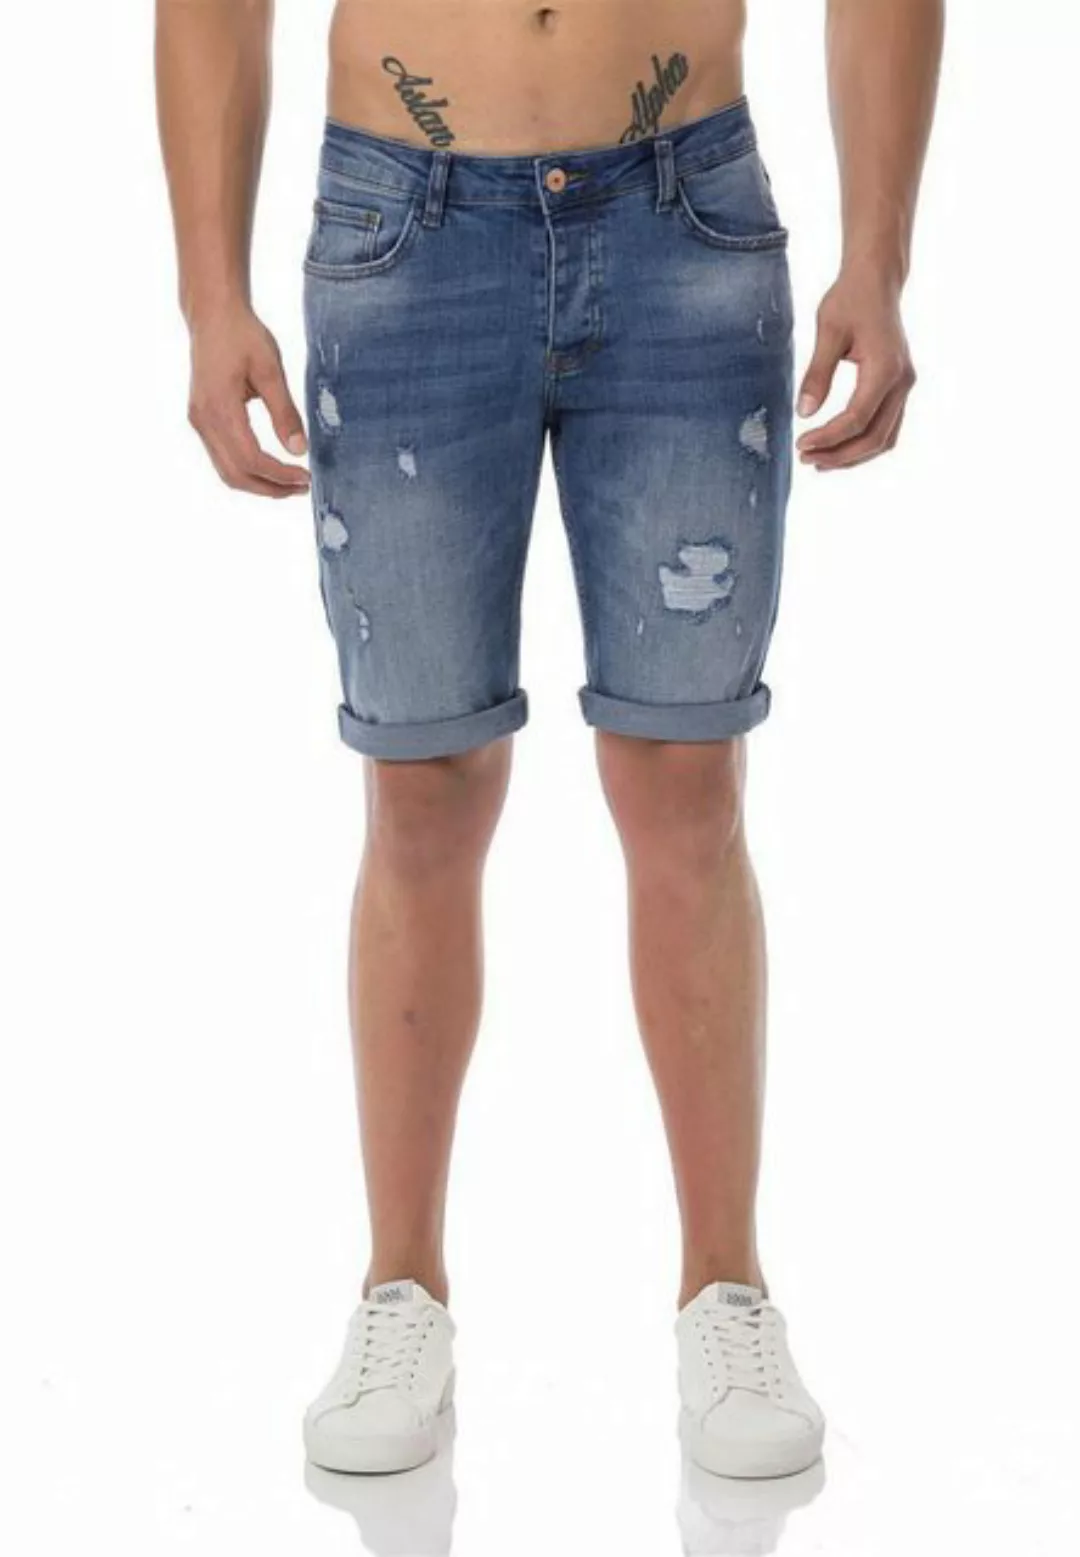 RedBridge Jeansshorts Red Bridge Herren Jeans Shorts Kurze Hose Denim Diver günstig online kaufen